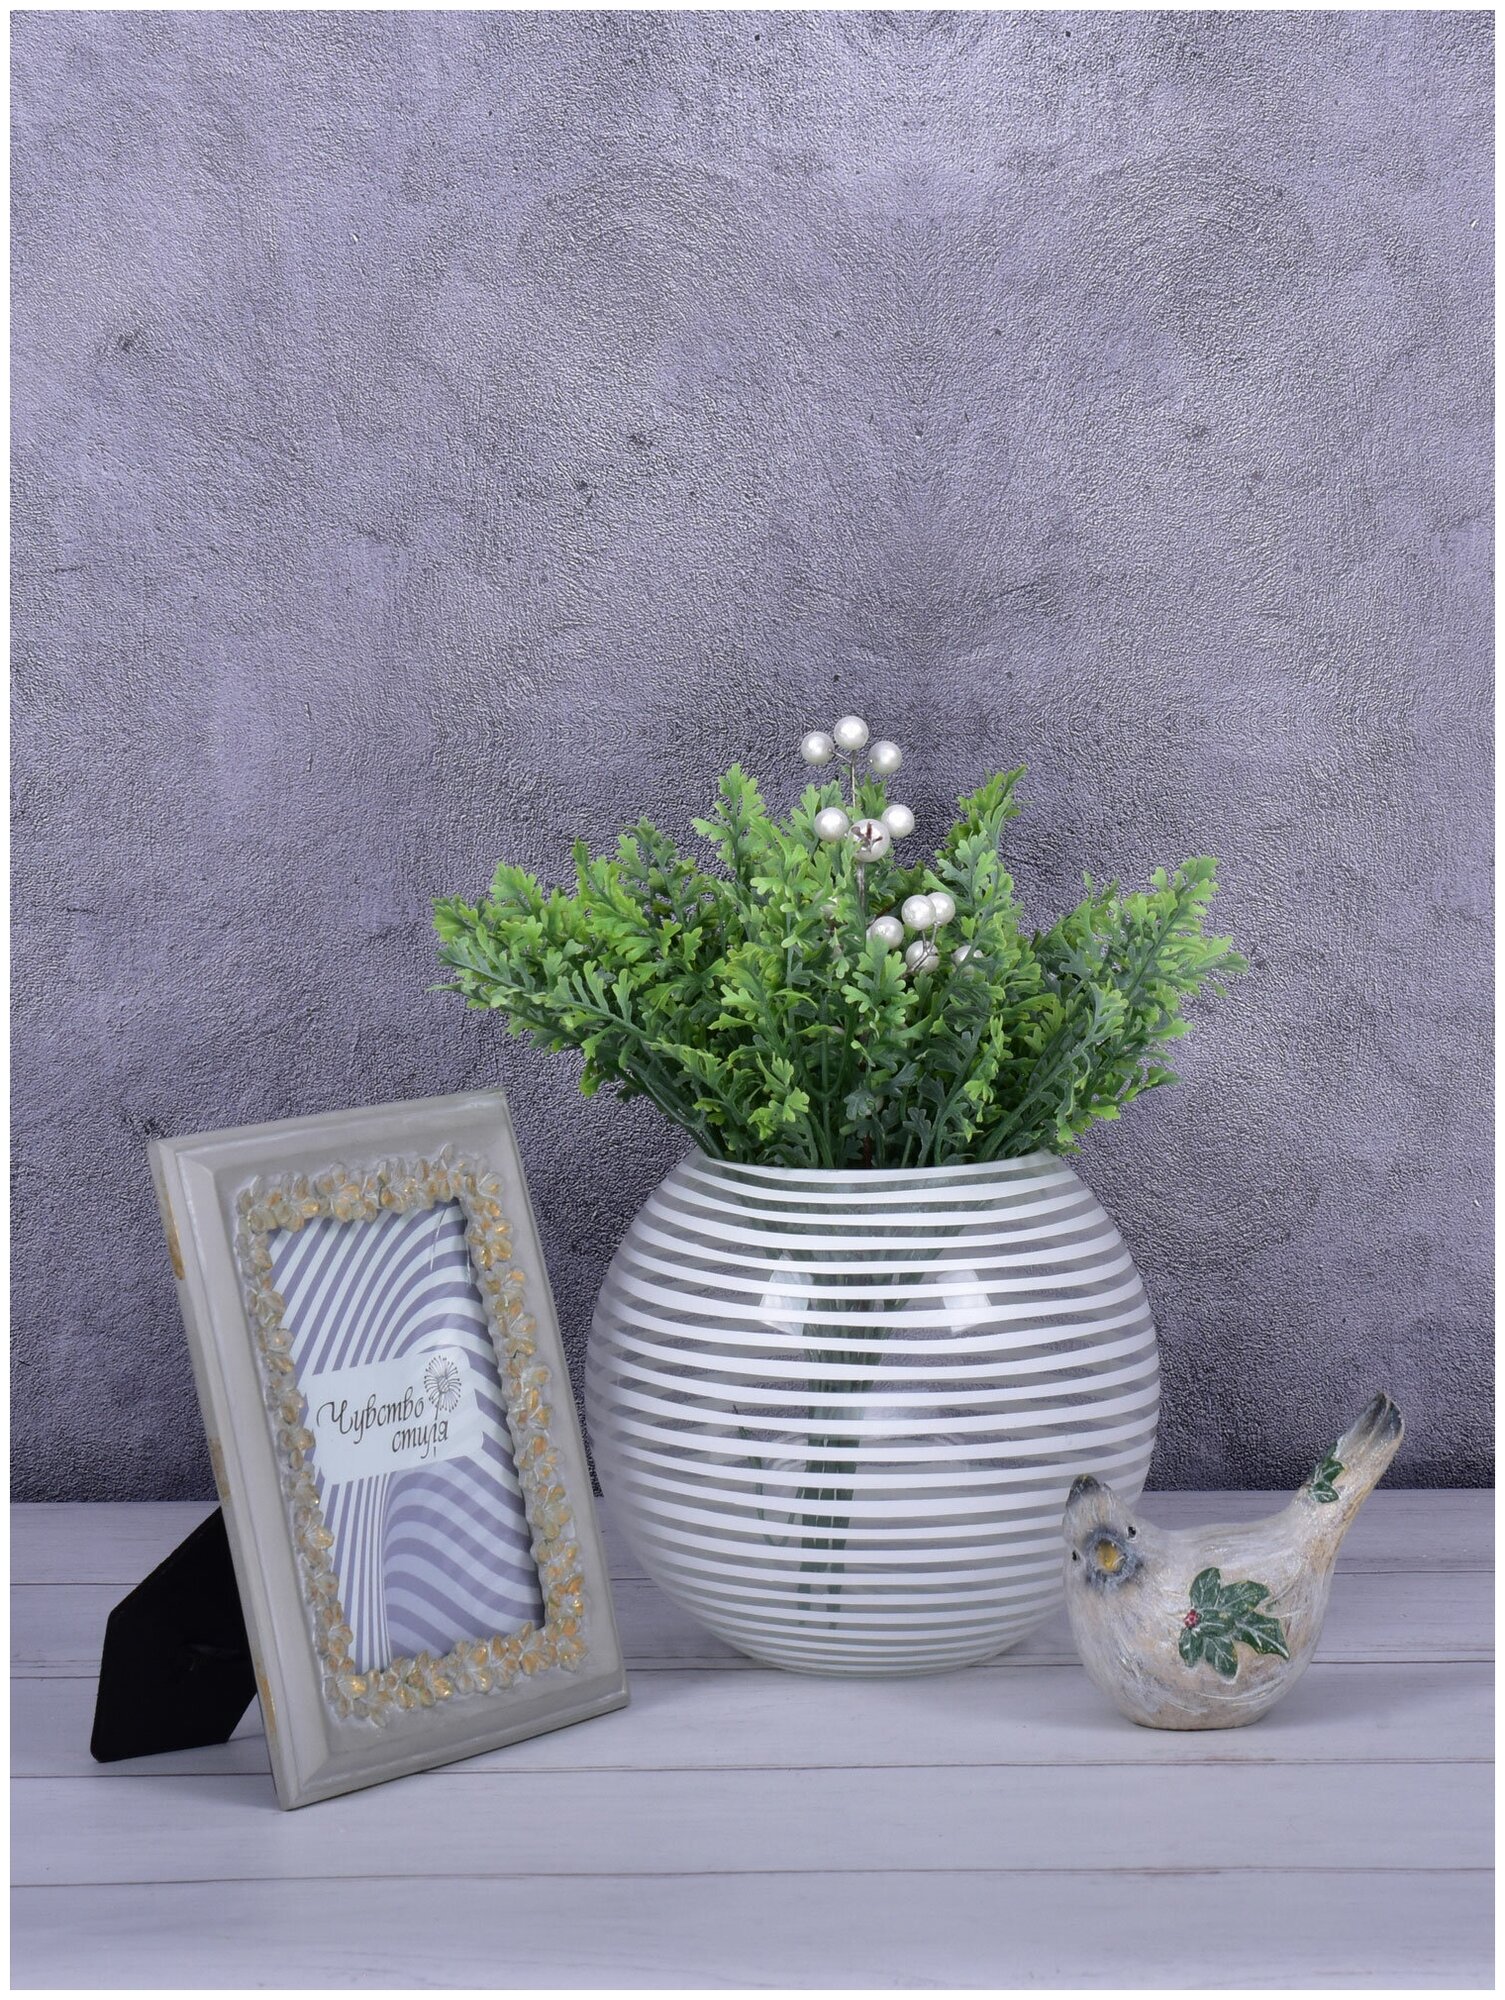 Интерьерная стеклянная ваза для цветов и сухоцветов, летний дождь ваза, прозрачный с белым рисунком, круглая 19см